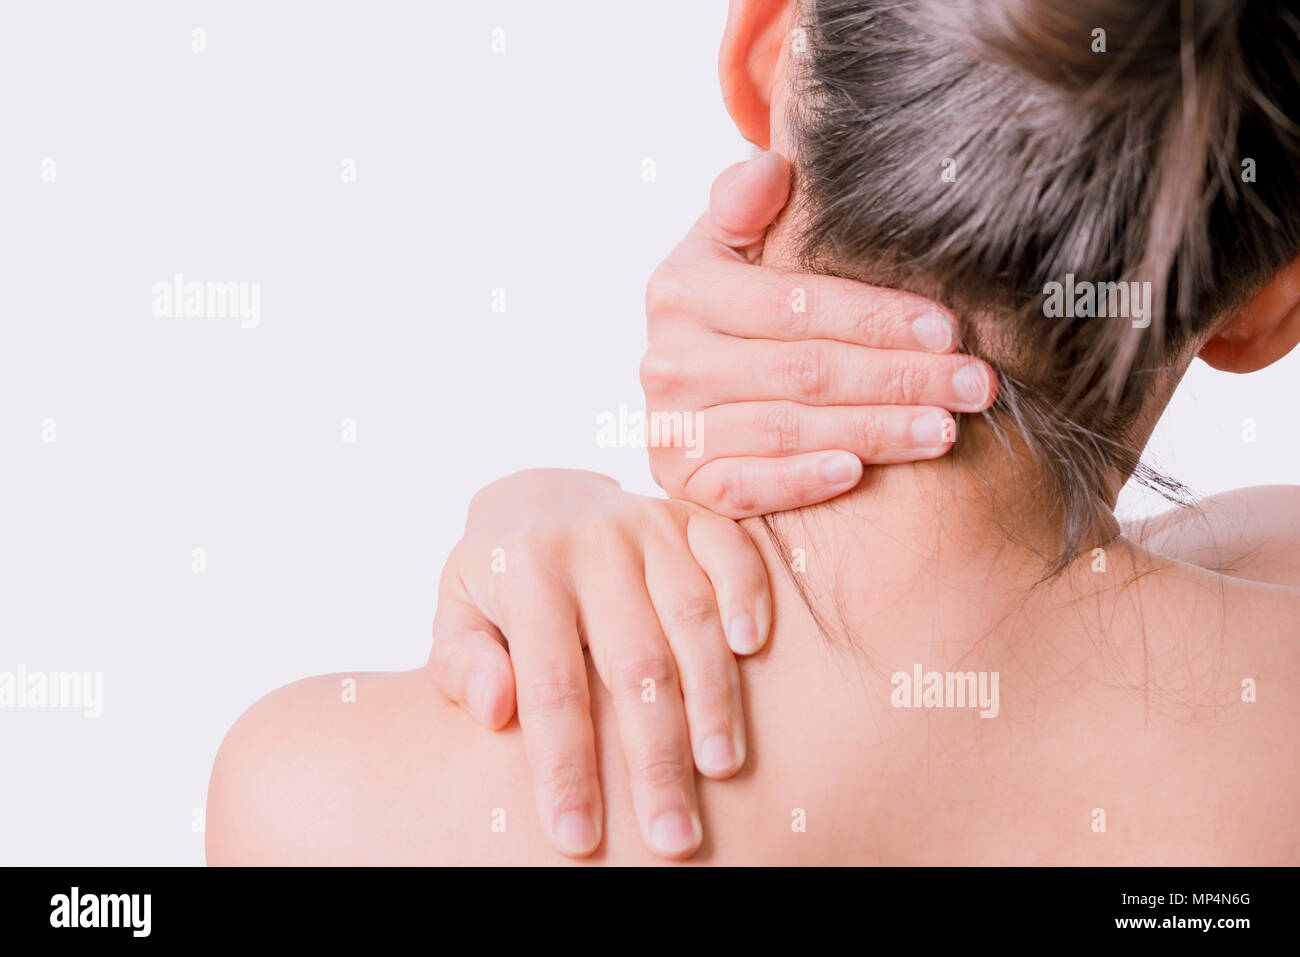 Closeup mujeres dolor de cuello y hombro/lesión con fondos blancos, concepto de salud y medicina Foto de stock